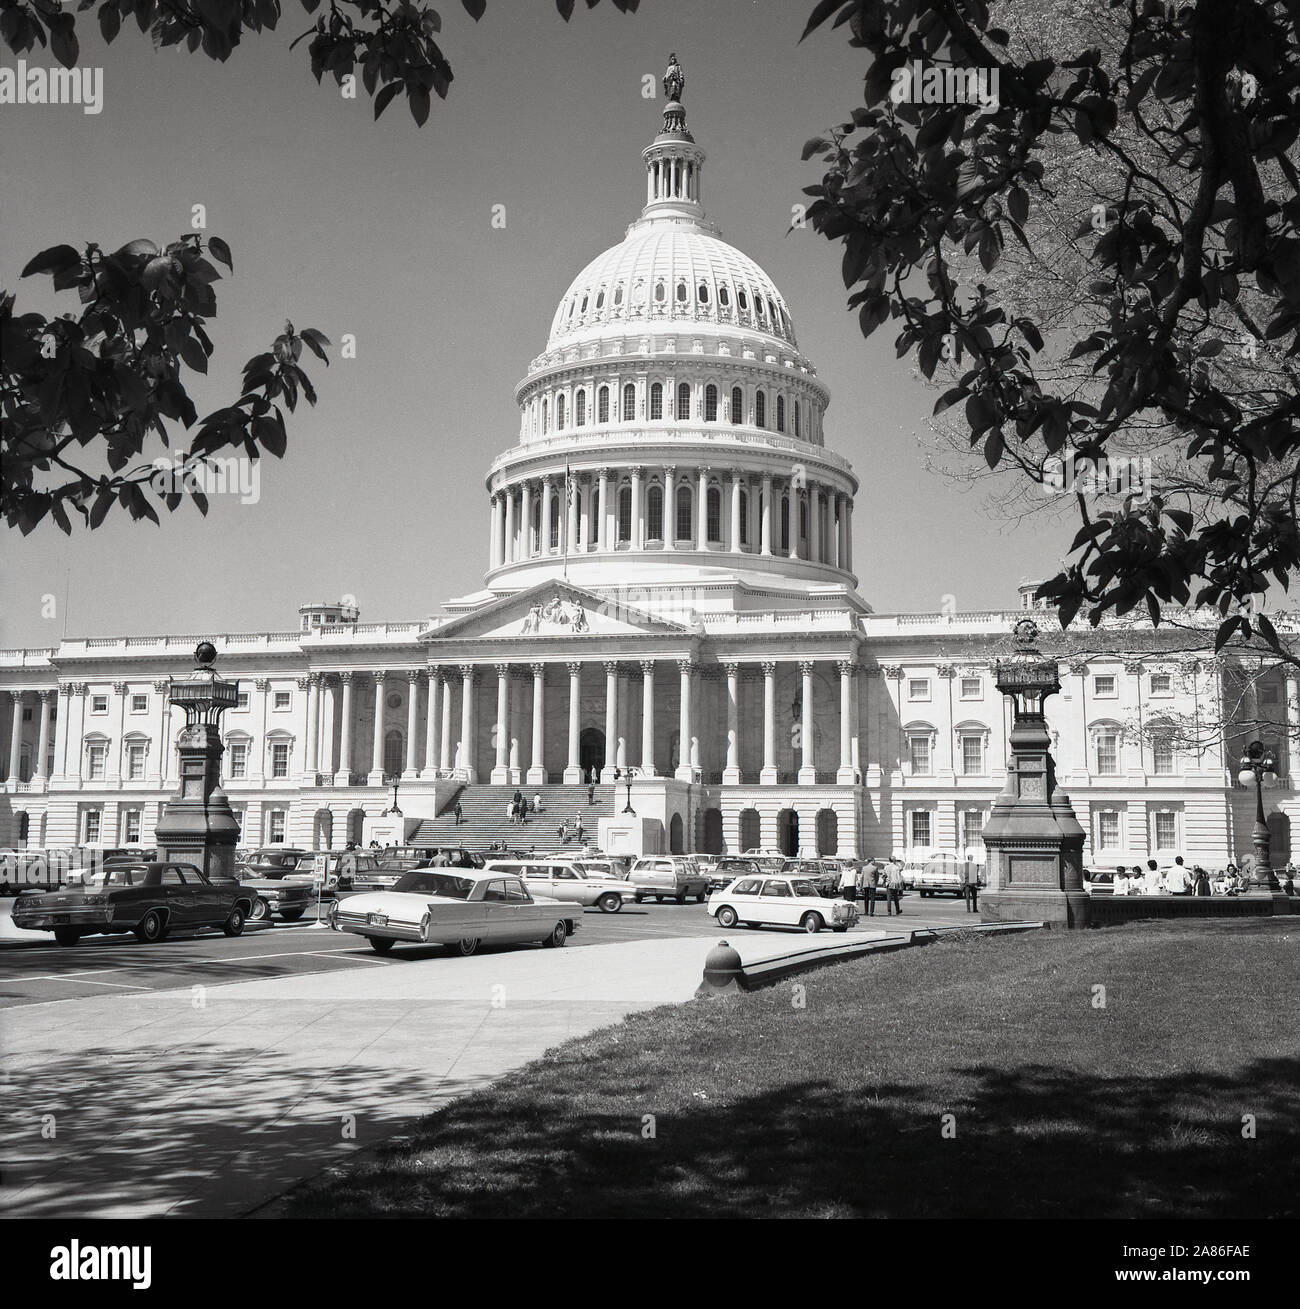 Années 1950, historiques, Washington D.C, USA, photo de cette époque le Capitol, la maison de l'US Congess et le siège de la branche législative du gouvernement fédéral des États-Unis. Construit dans un style néo-classique, lorsqu'il a été élargi dans les années 1850, un grand dôme en fonte a remplacé l'original plus petit du dôme inférieur de 1818. Banque D'Images